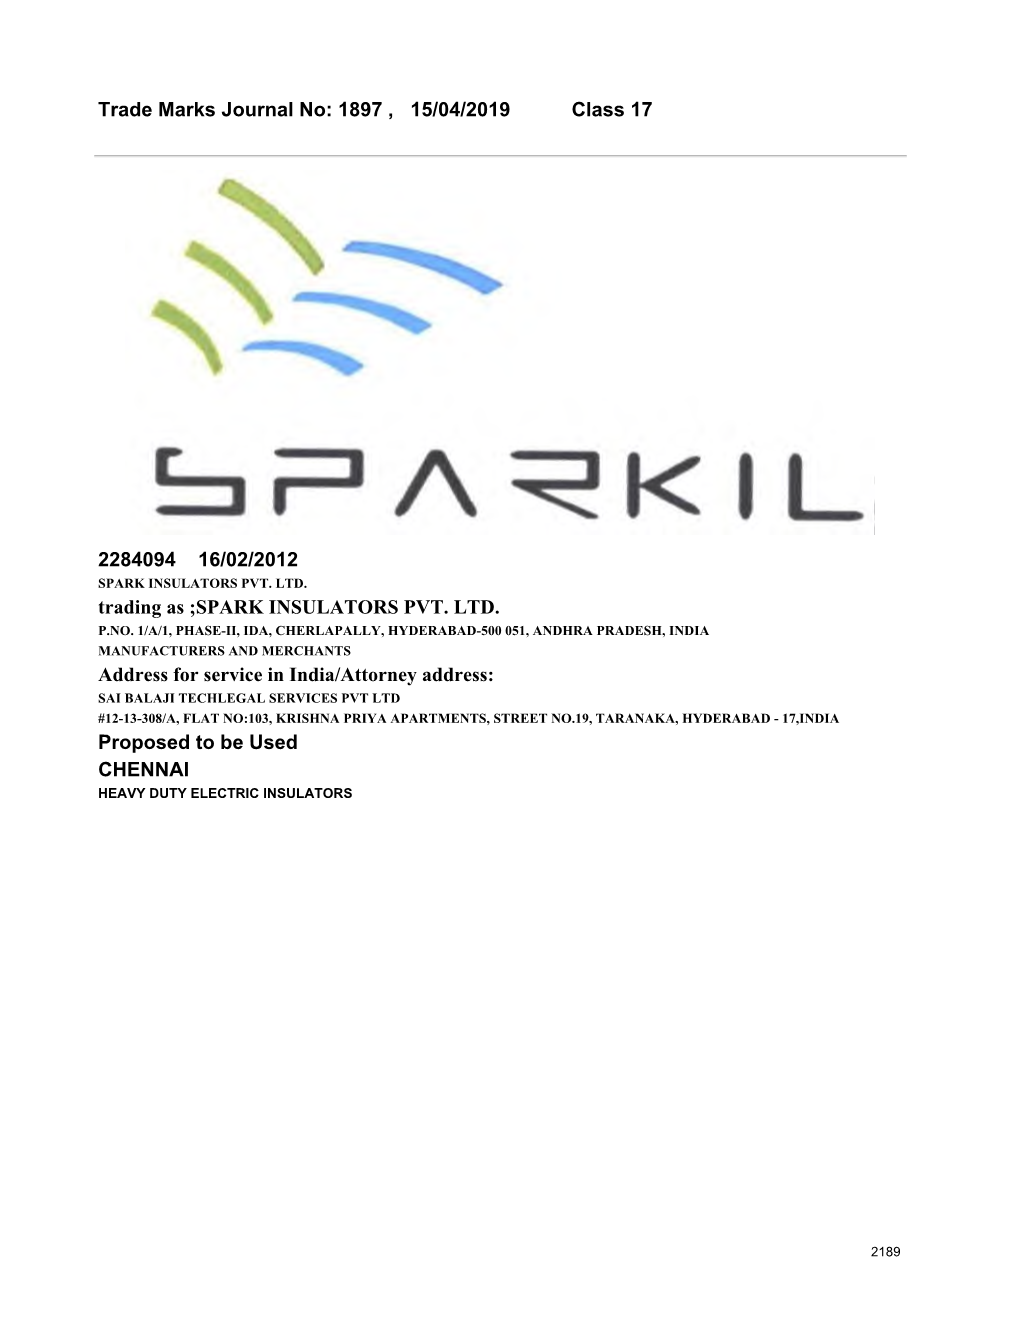 SPARK INSULATORS PVT. LTD. Address Fo